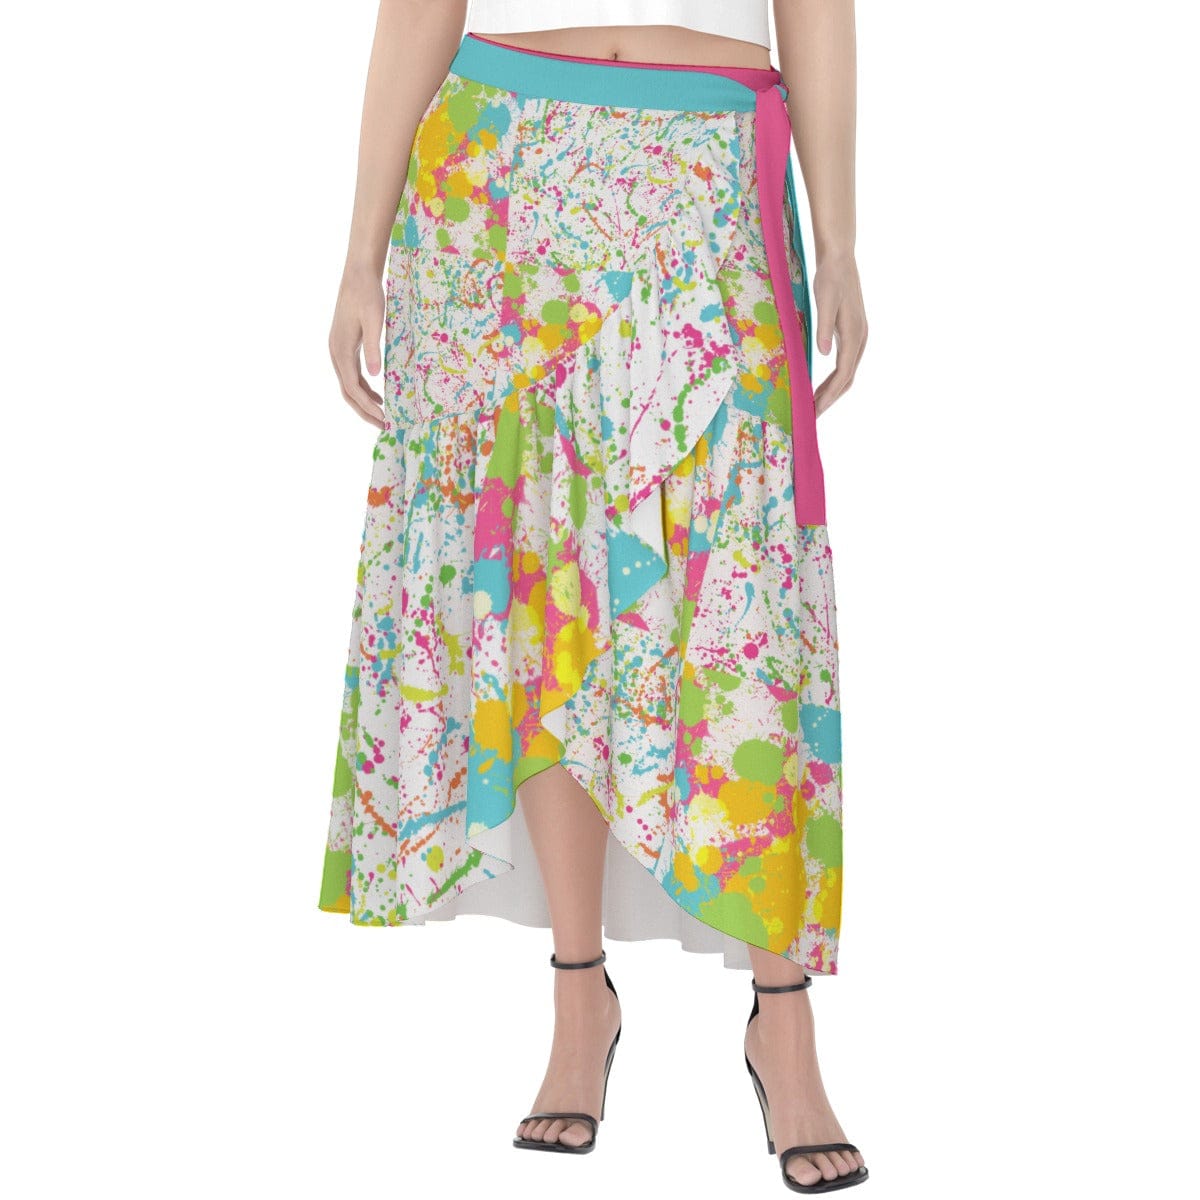 Yoycol skirt Paint Splatter - Women's Wrap Skirt